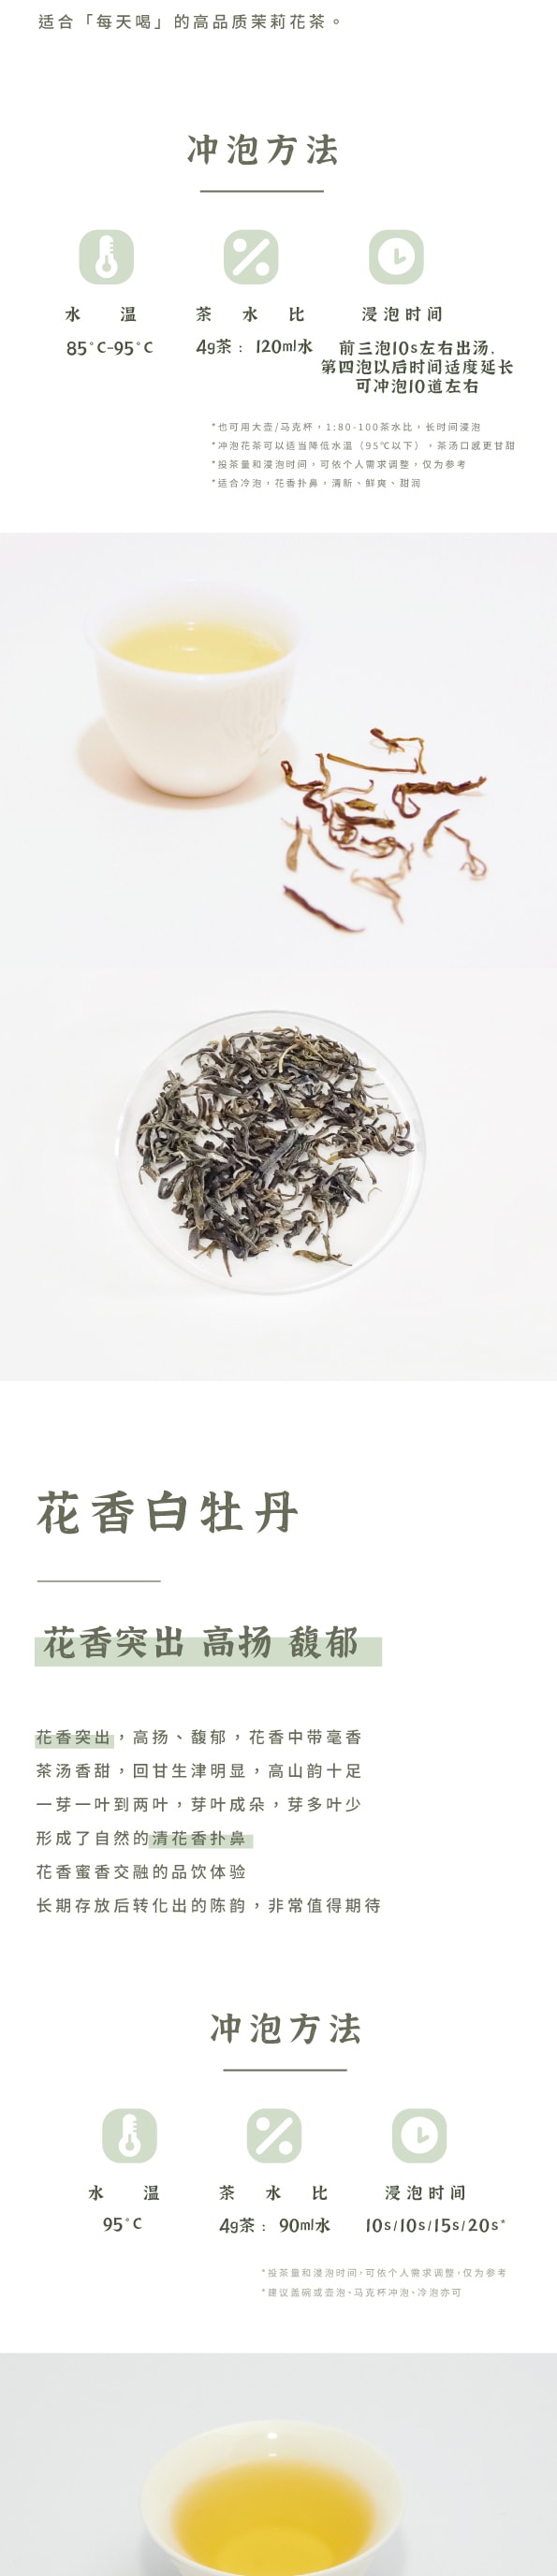 美国 赵赵的茶 ZhaoTea 新中式茶礼盒 · 千里江山 · 中国名画 送礼/摆设/存茶/品饮 老枞红茶40g(5gx8)